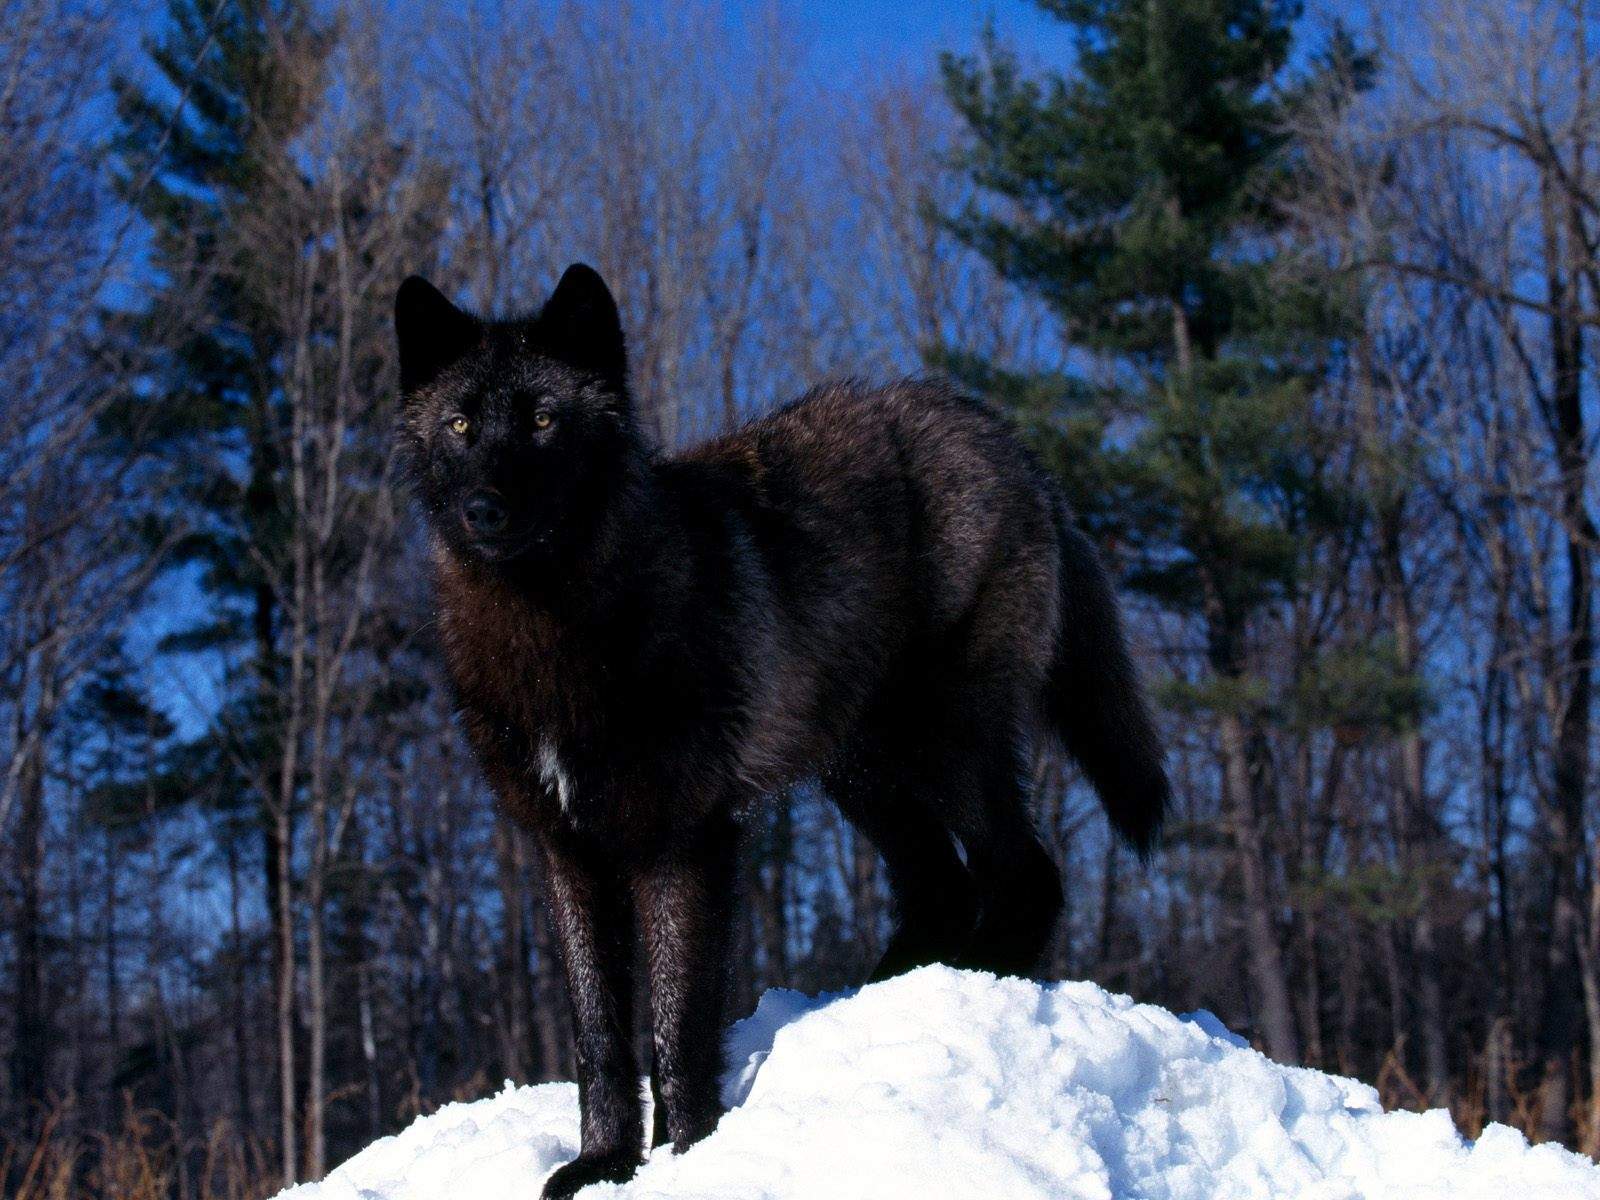 http://4.bp.blogspot.com/-kSgj4sWVM1E/UJqNQIN1MdI/AAAAAAAABRo/LmsE97A0CS4/s1600/Black+Wolf+in+Snow-wallpaper-Black+Wolf+in+Snow-hd-desktop.jpg